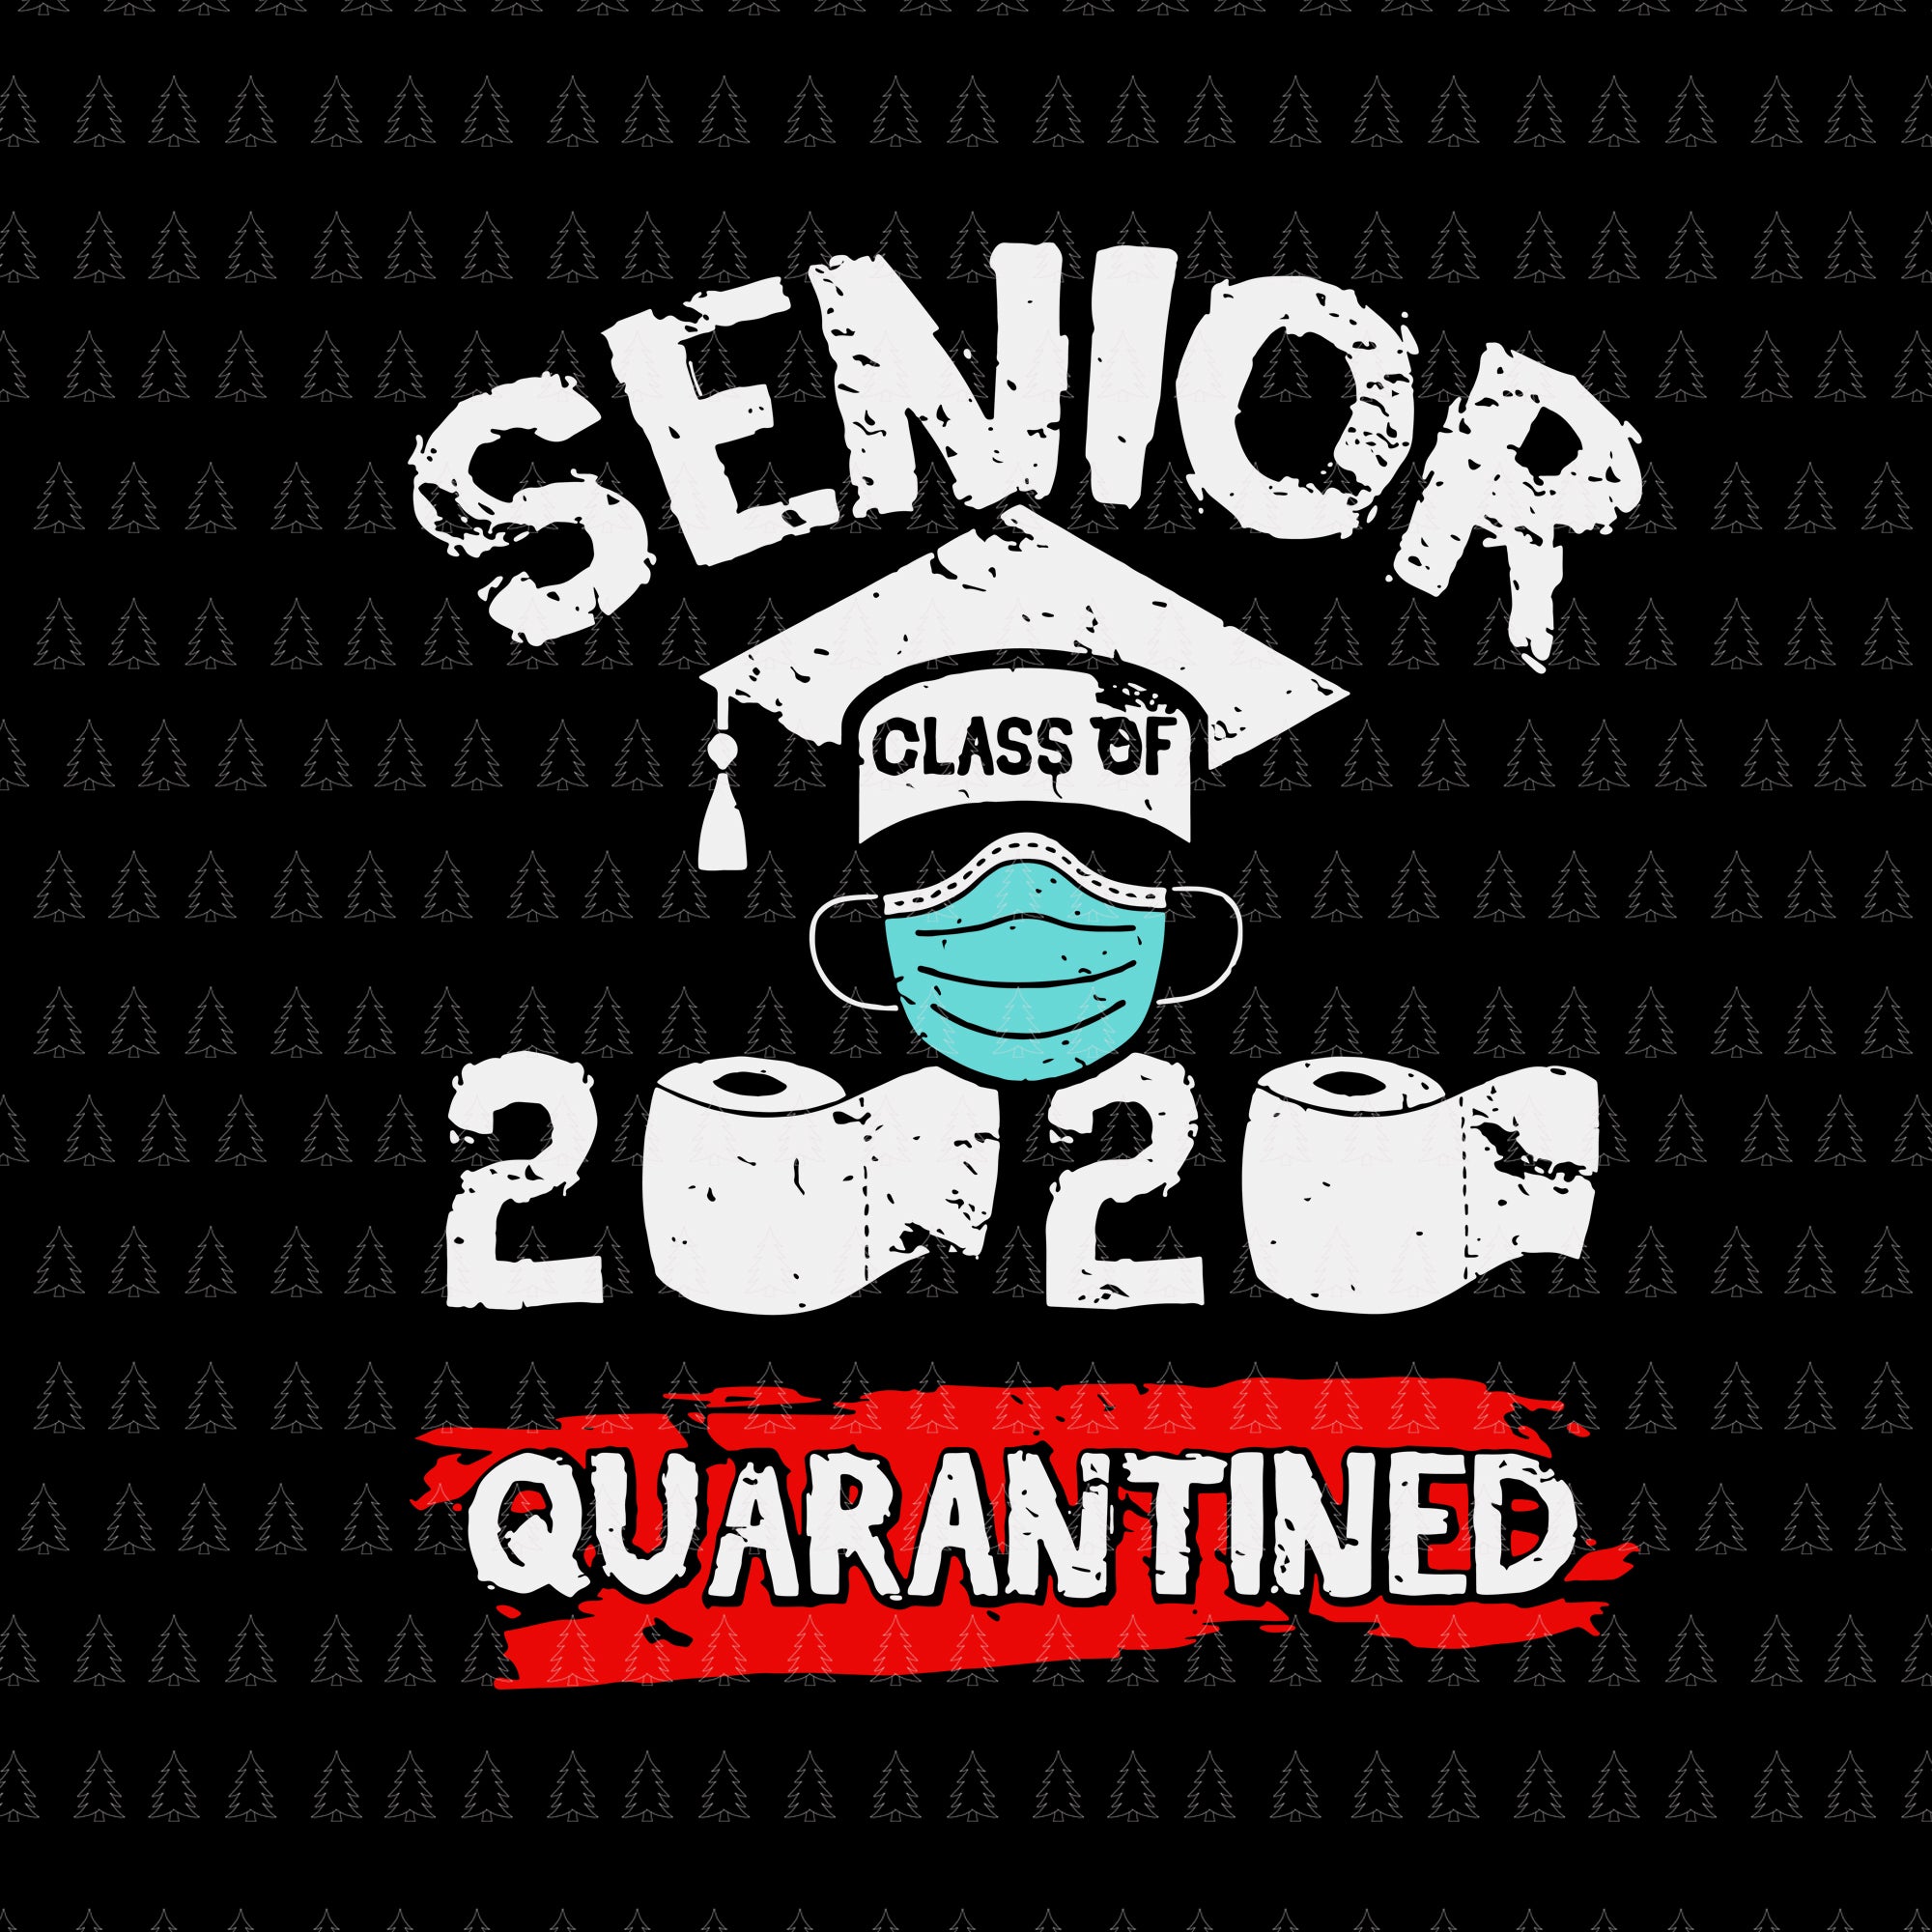 Class of quarantined 2020 svg, class of quarantined seniors 2020 svg, class of quarantined seniors 2020, senior 2020, senior 2020 svg, png, eps, dxf file